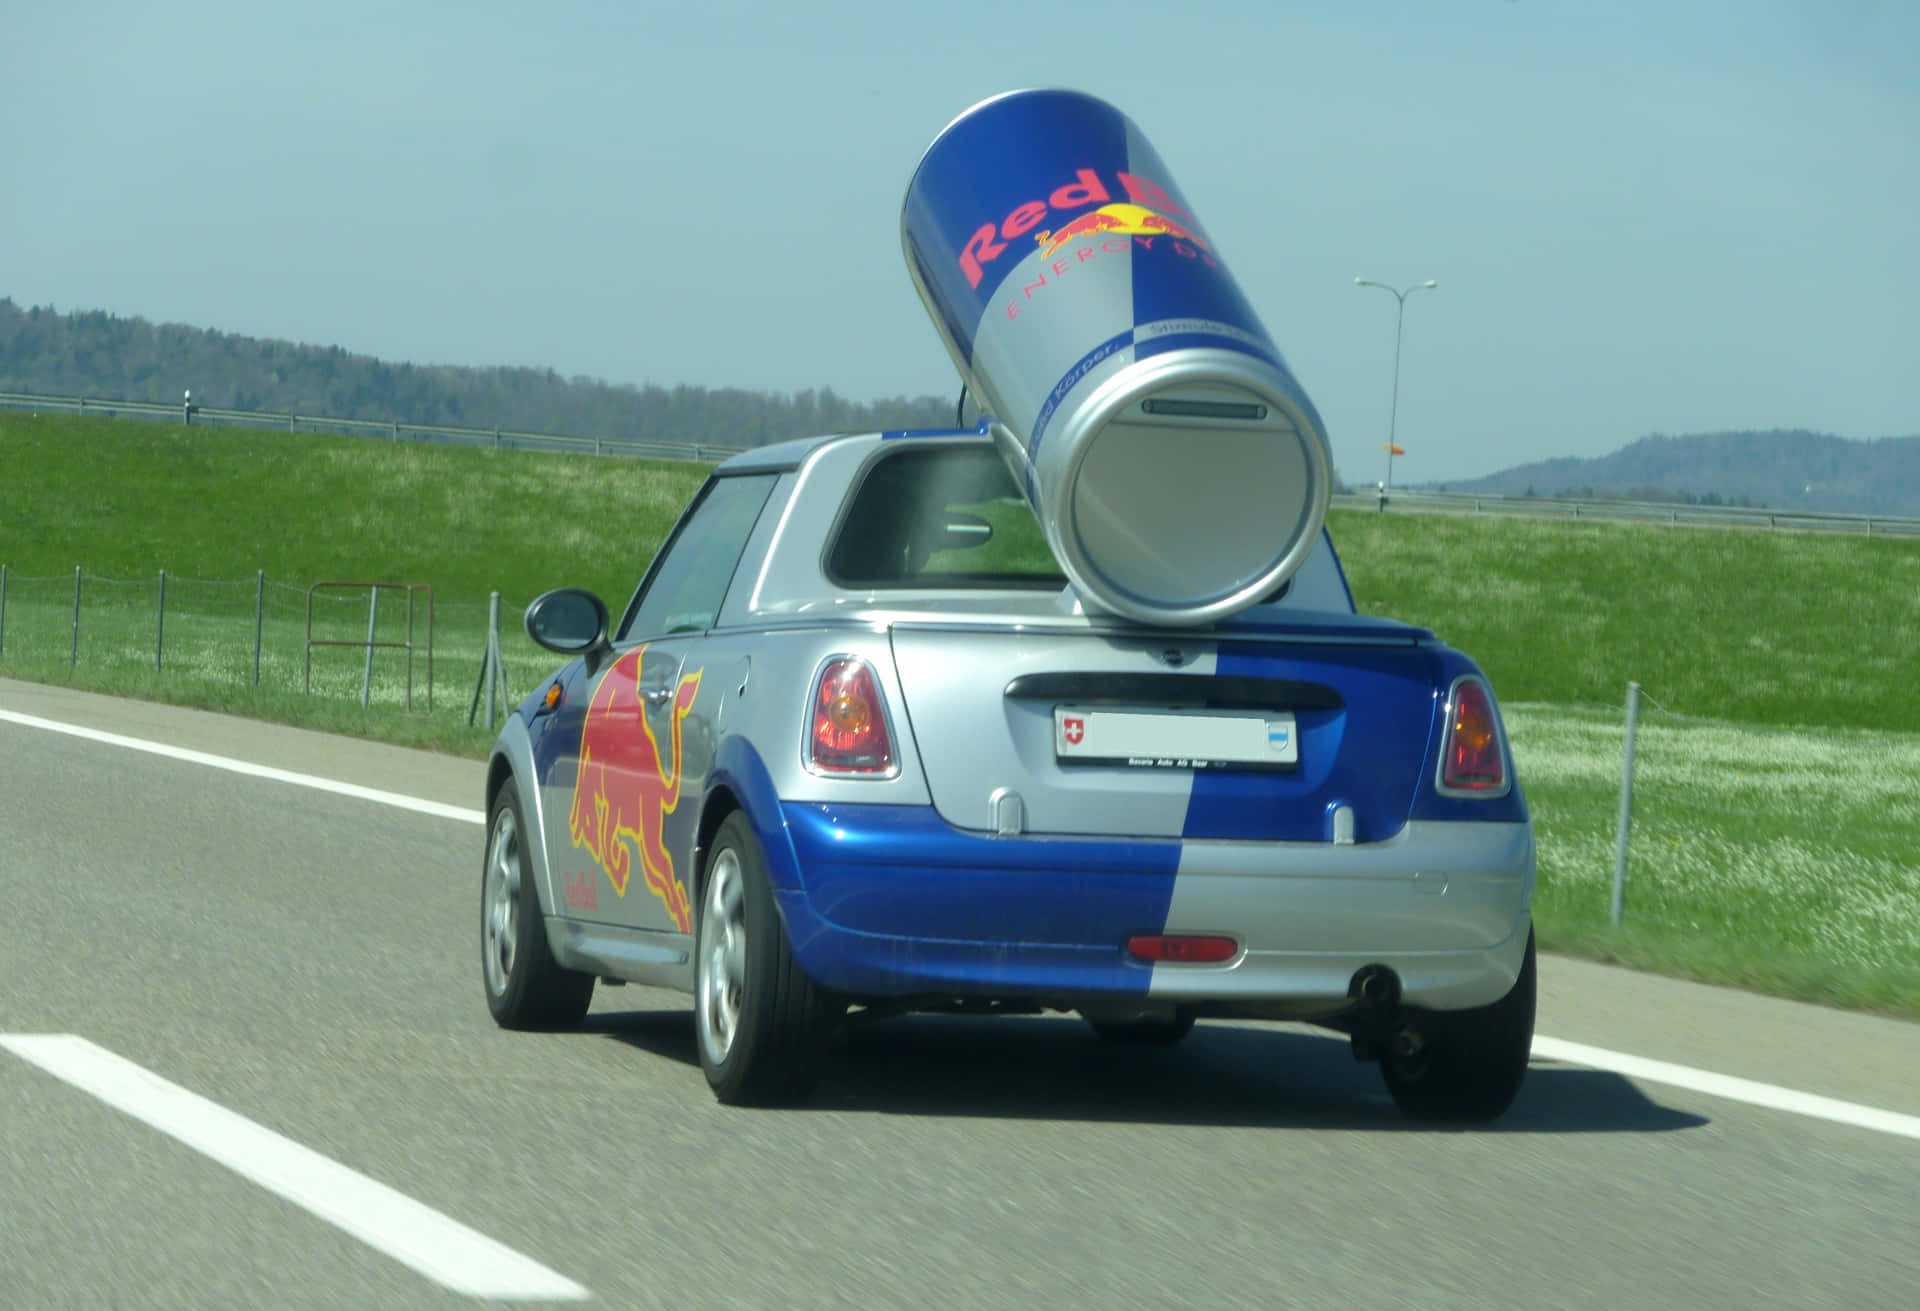 ¡sientela Energía De Red Bull, Donde Quiera Que Vayas!